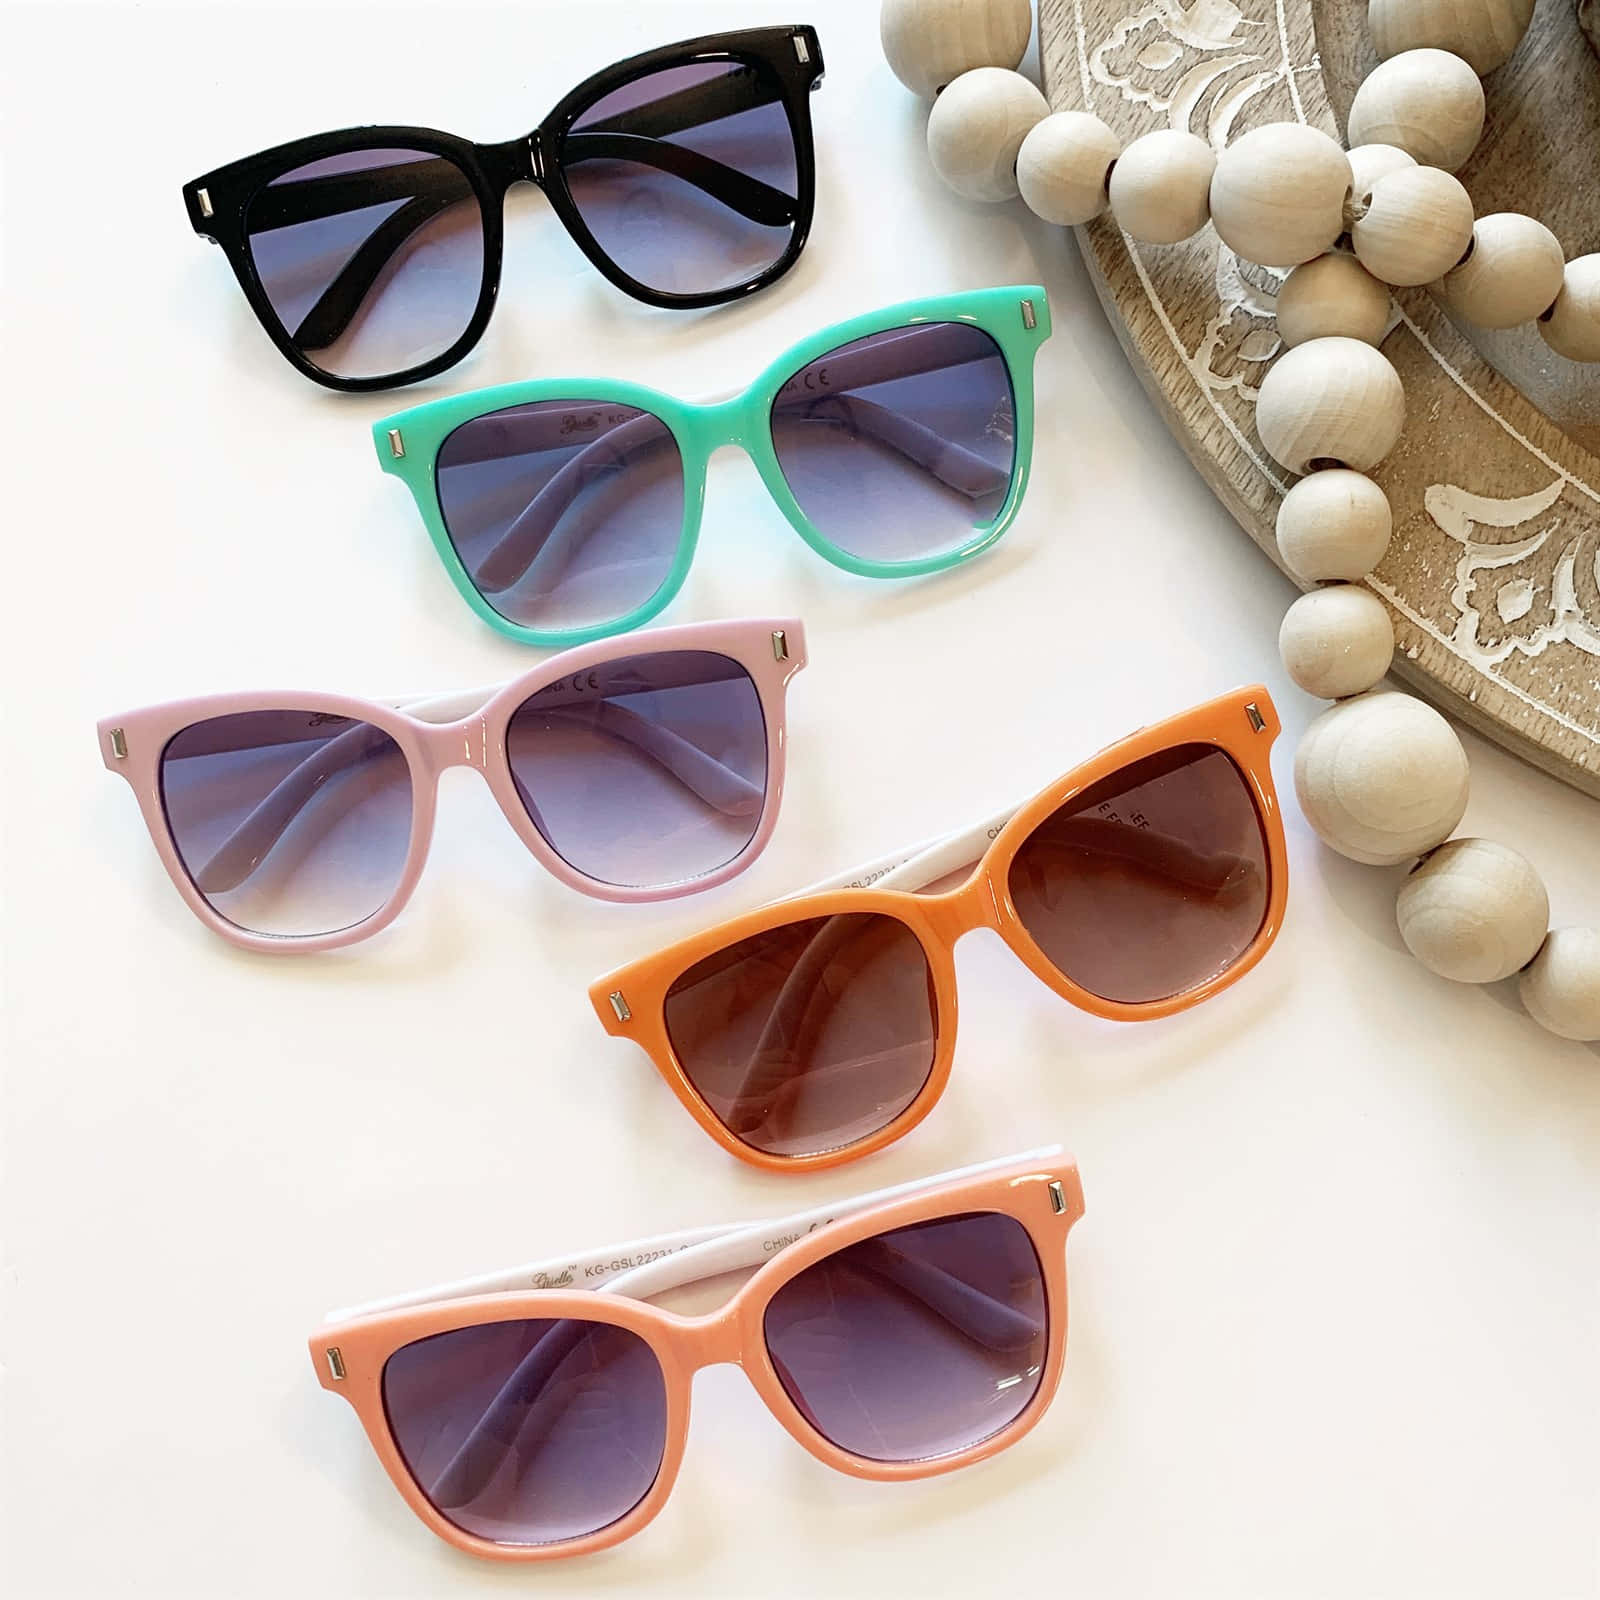 Ungrupo De Gafas De Sol Con Diferentes Colores Y Abalorios